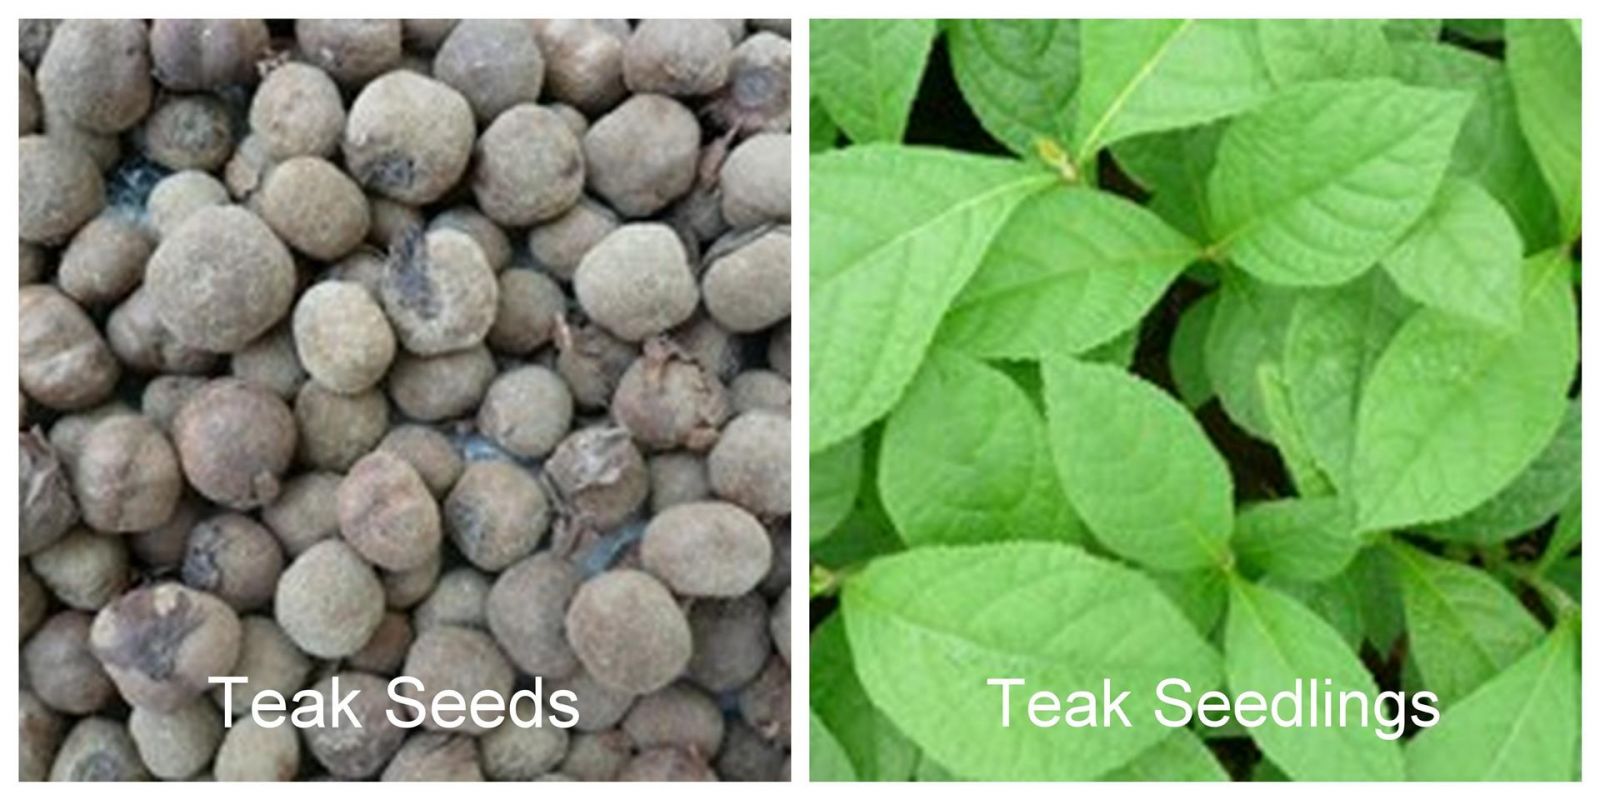 Teak Seedlings